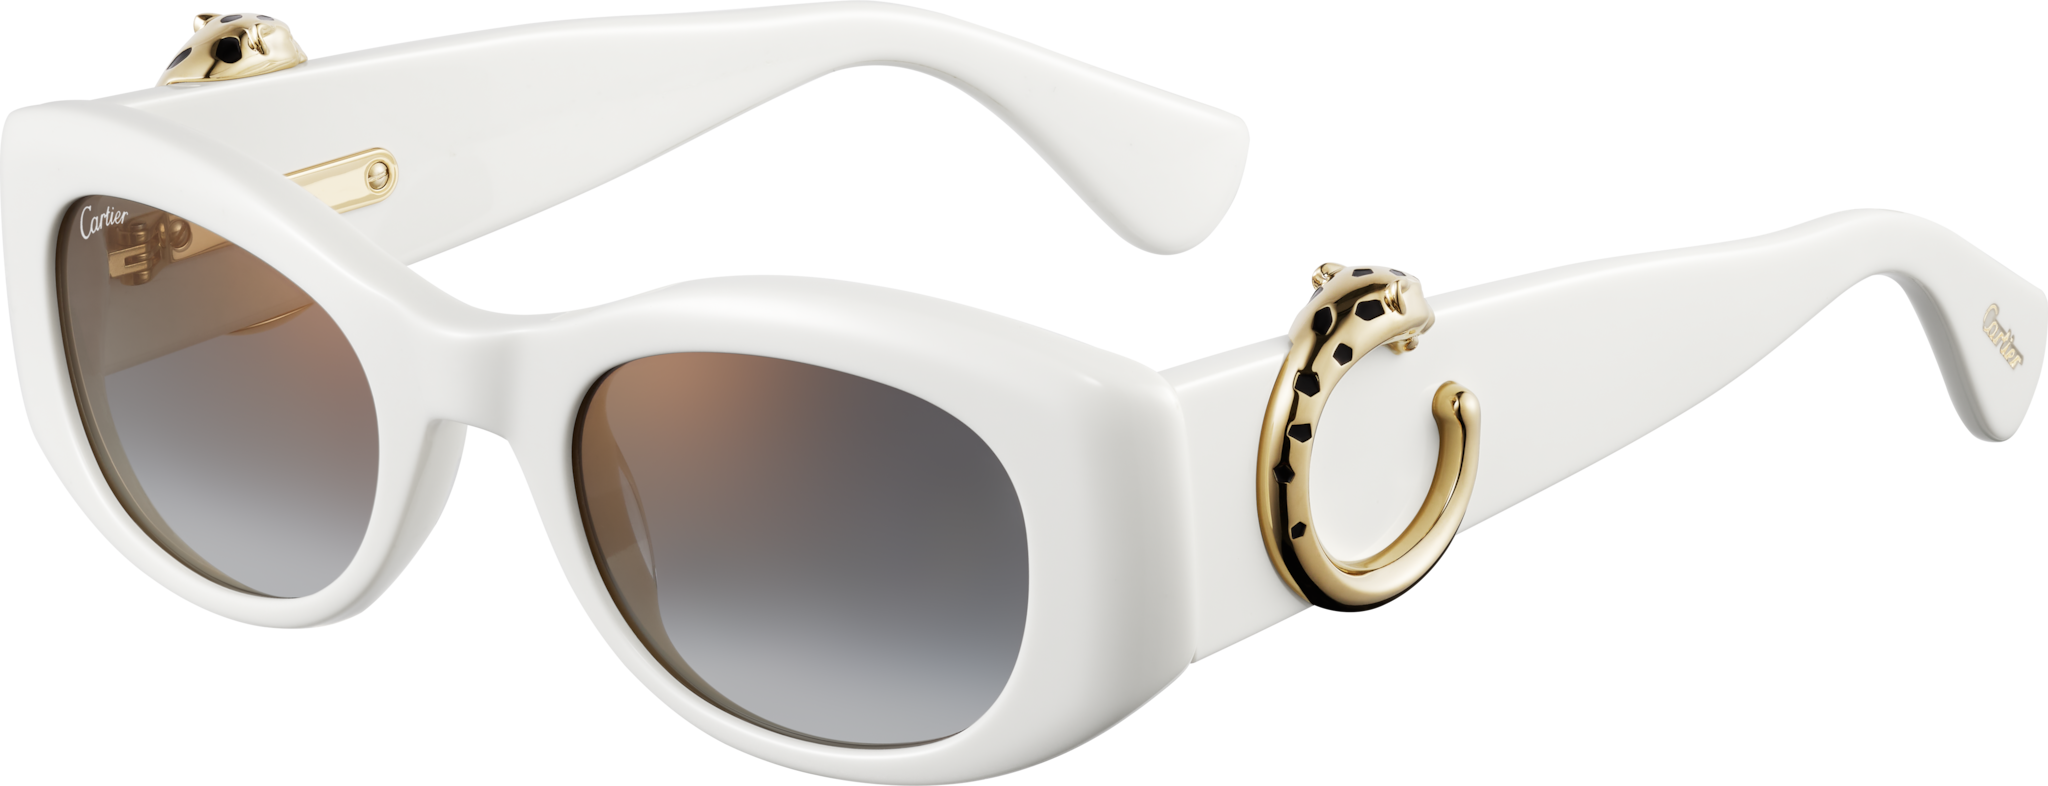 Gafas de sol Panthère de CartierAcetato blanco, lentes grises